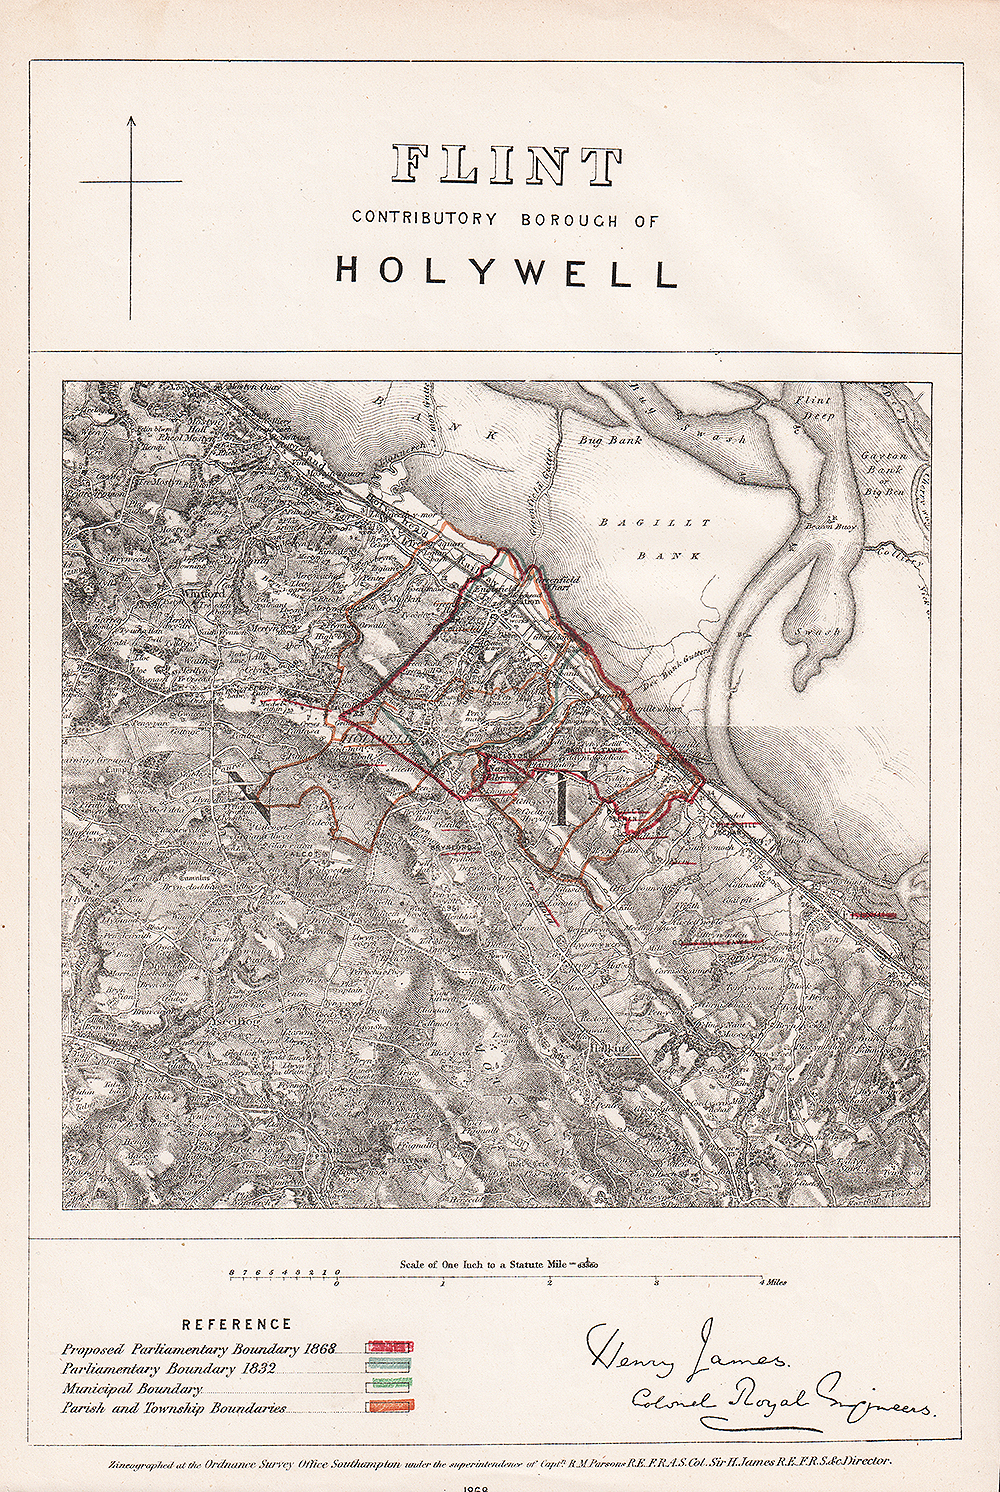 Holywell Contributory Borough 